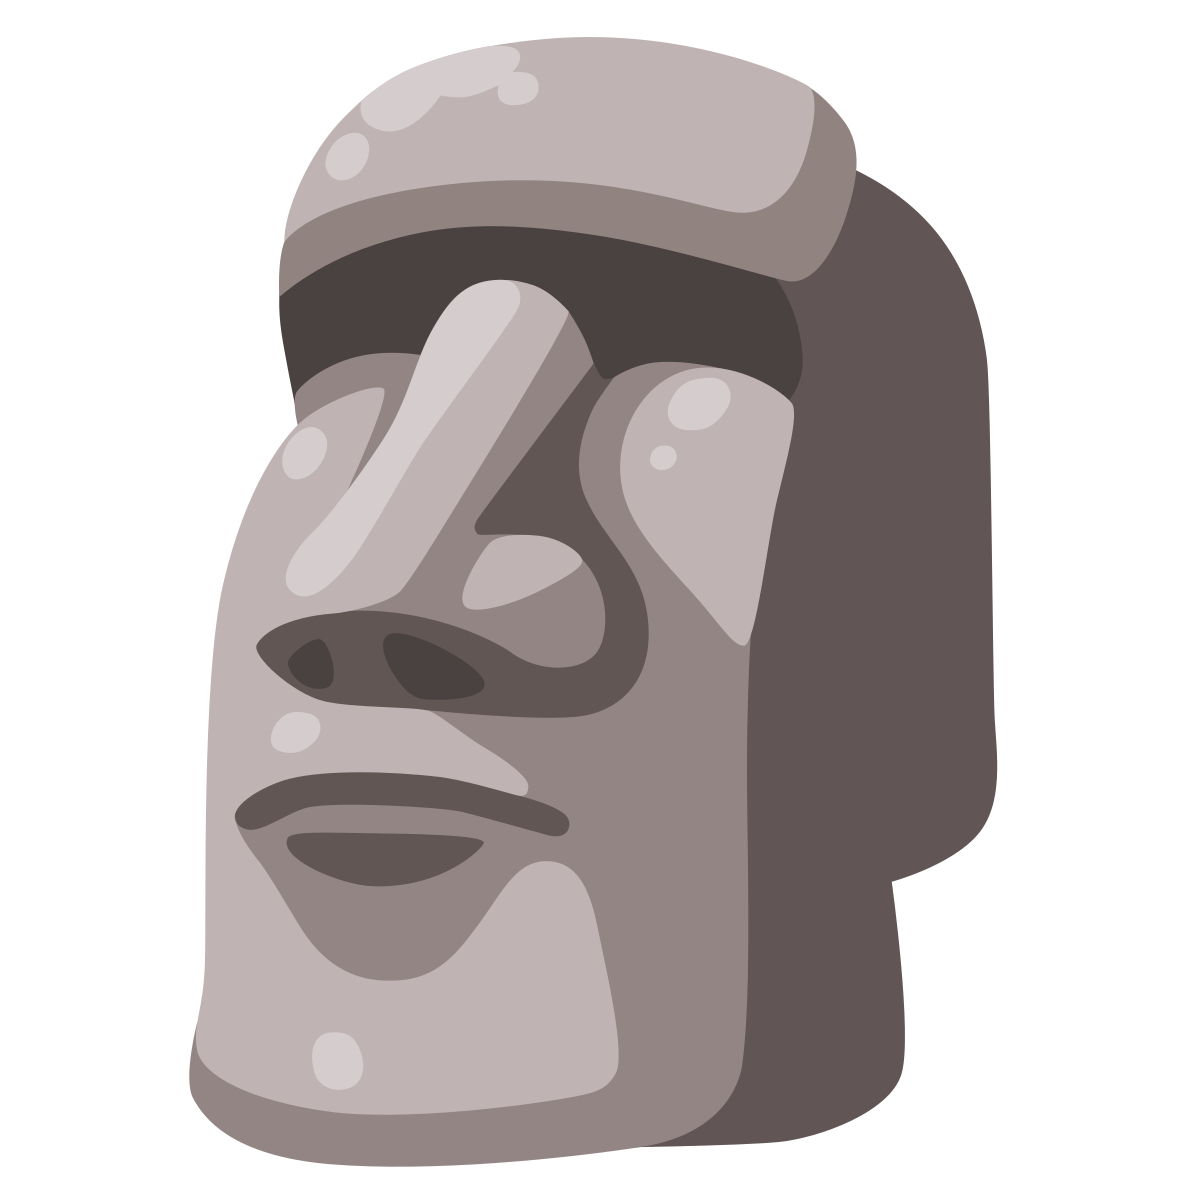 Moai Emojipedia Sticker Statue, Emoji transparent background PNG clipart